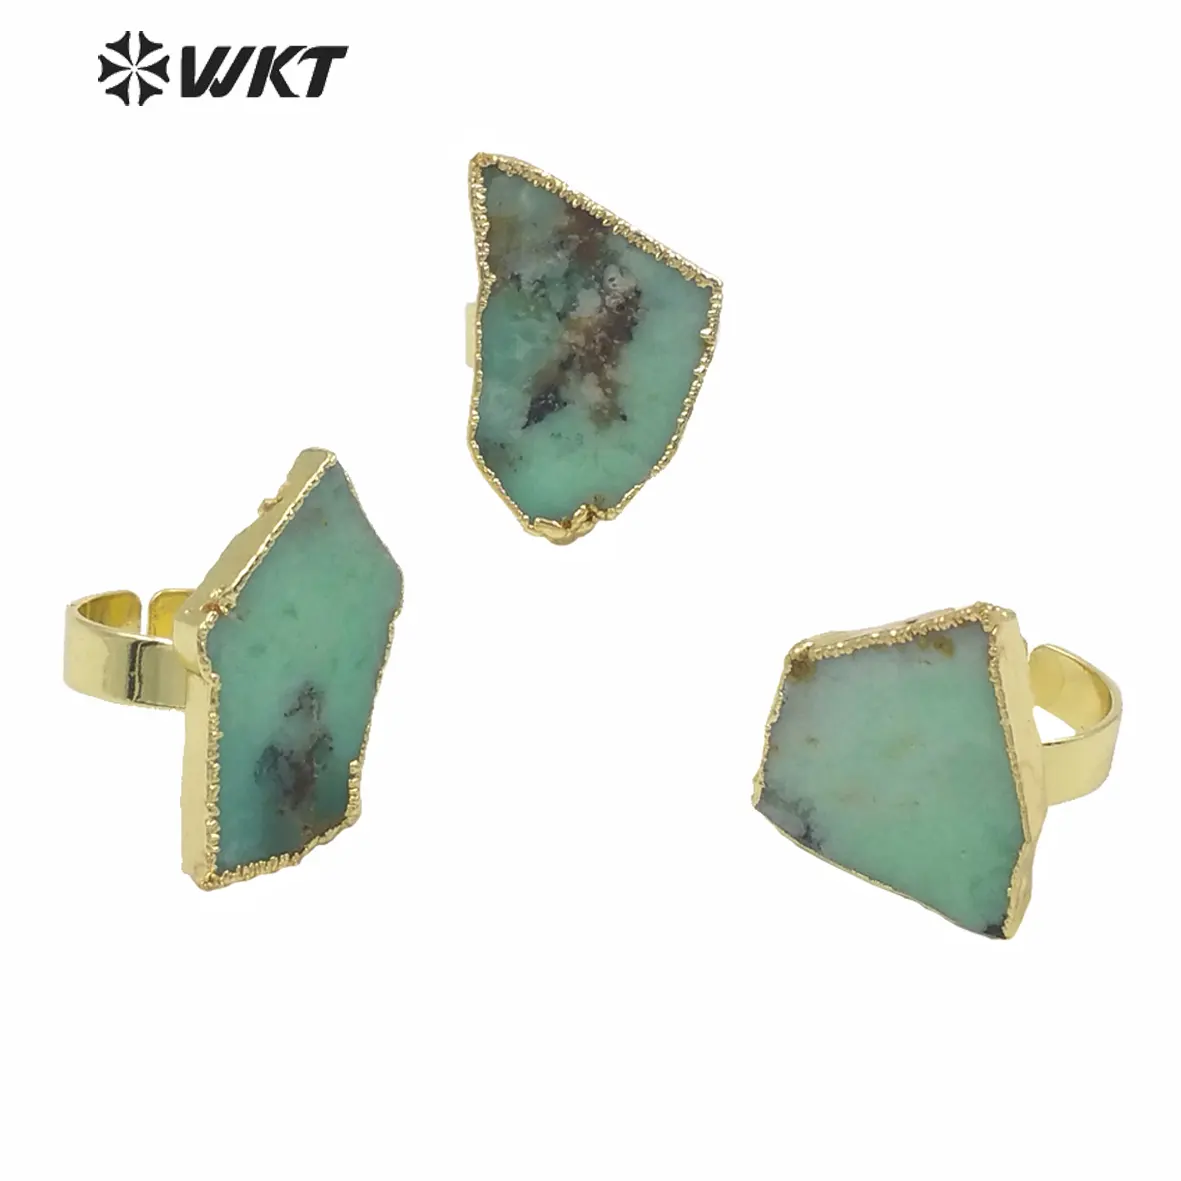 WT-R362 Desain Terbaru Berharga Chub Mackerel Batu Cincin Fashion Wanita Tidak Teratur Secara Acak Bentuk Green Jade Batu Cincin Emas